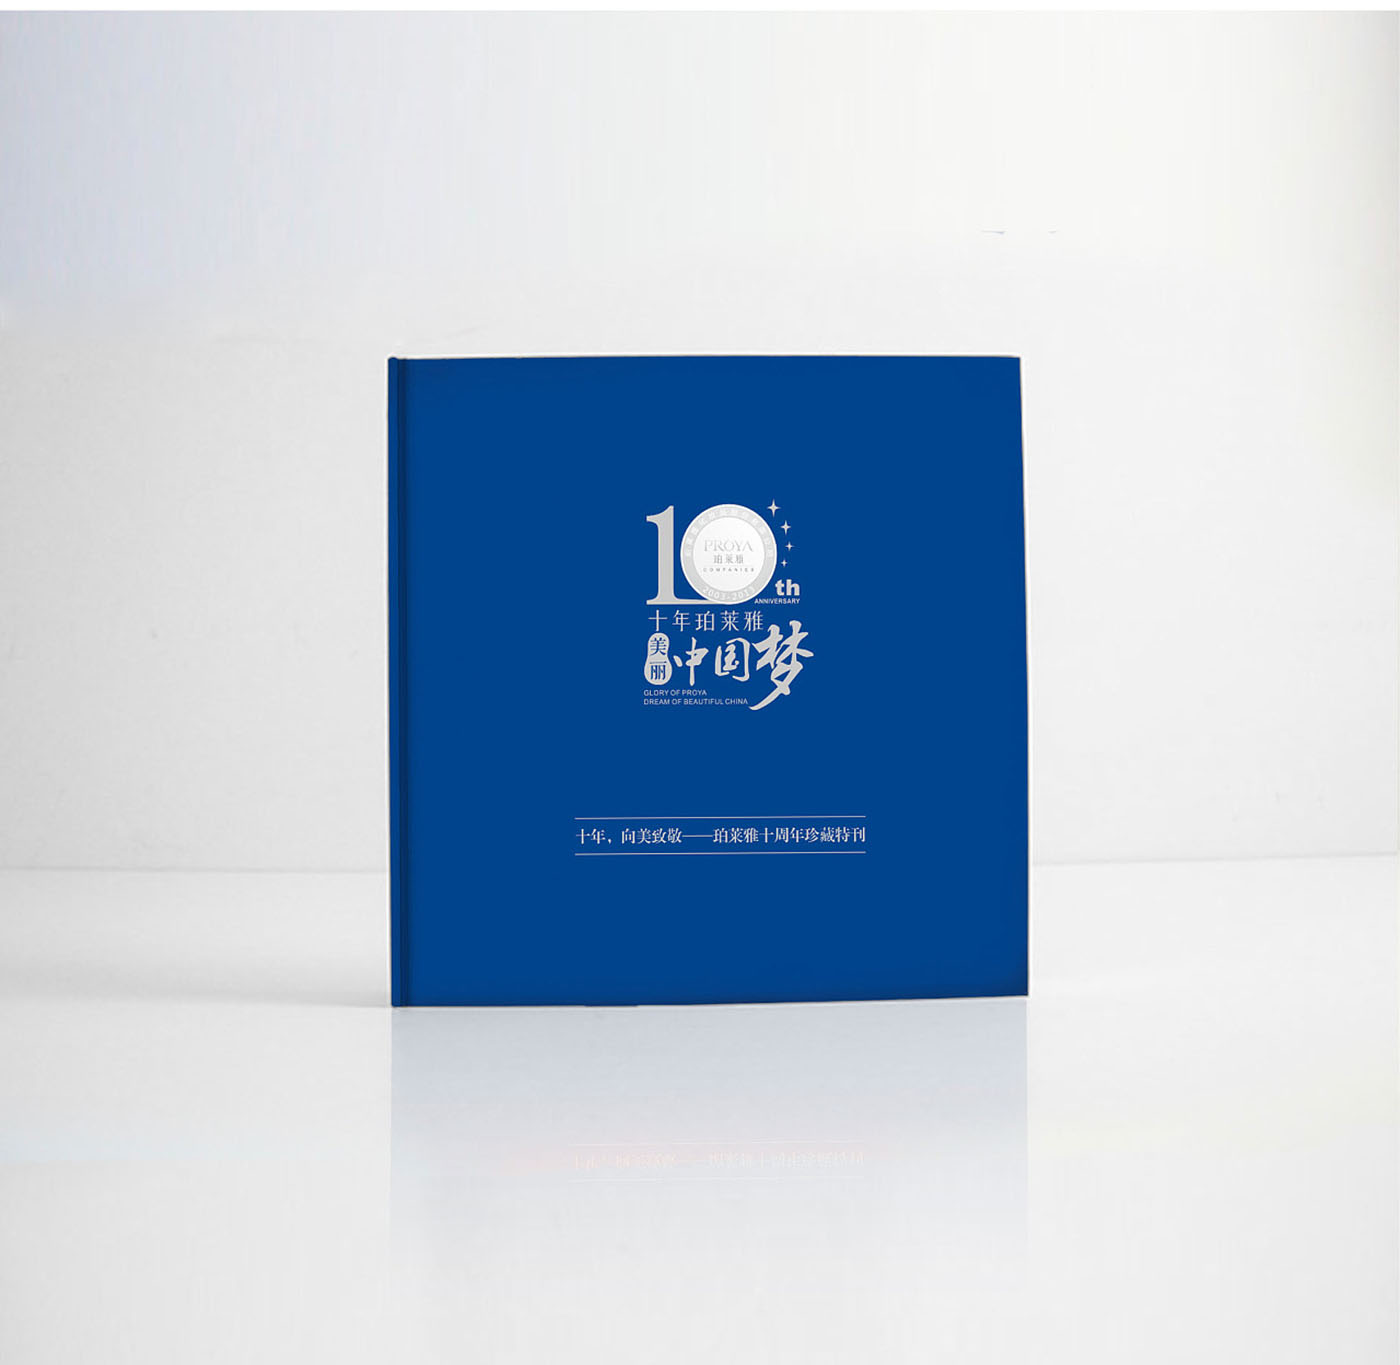 化妆品集团纪念册设计-化妆品行业纪念册设计公司